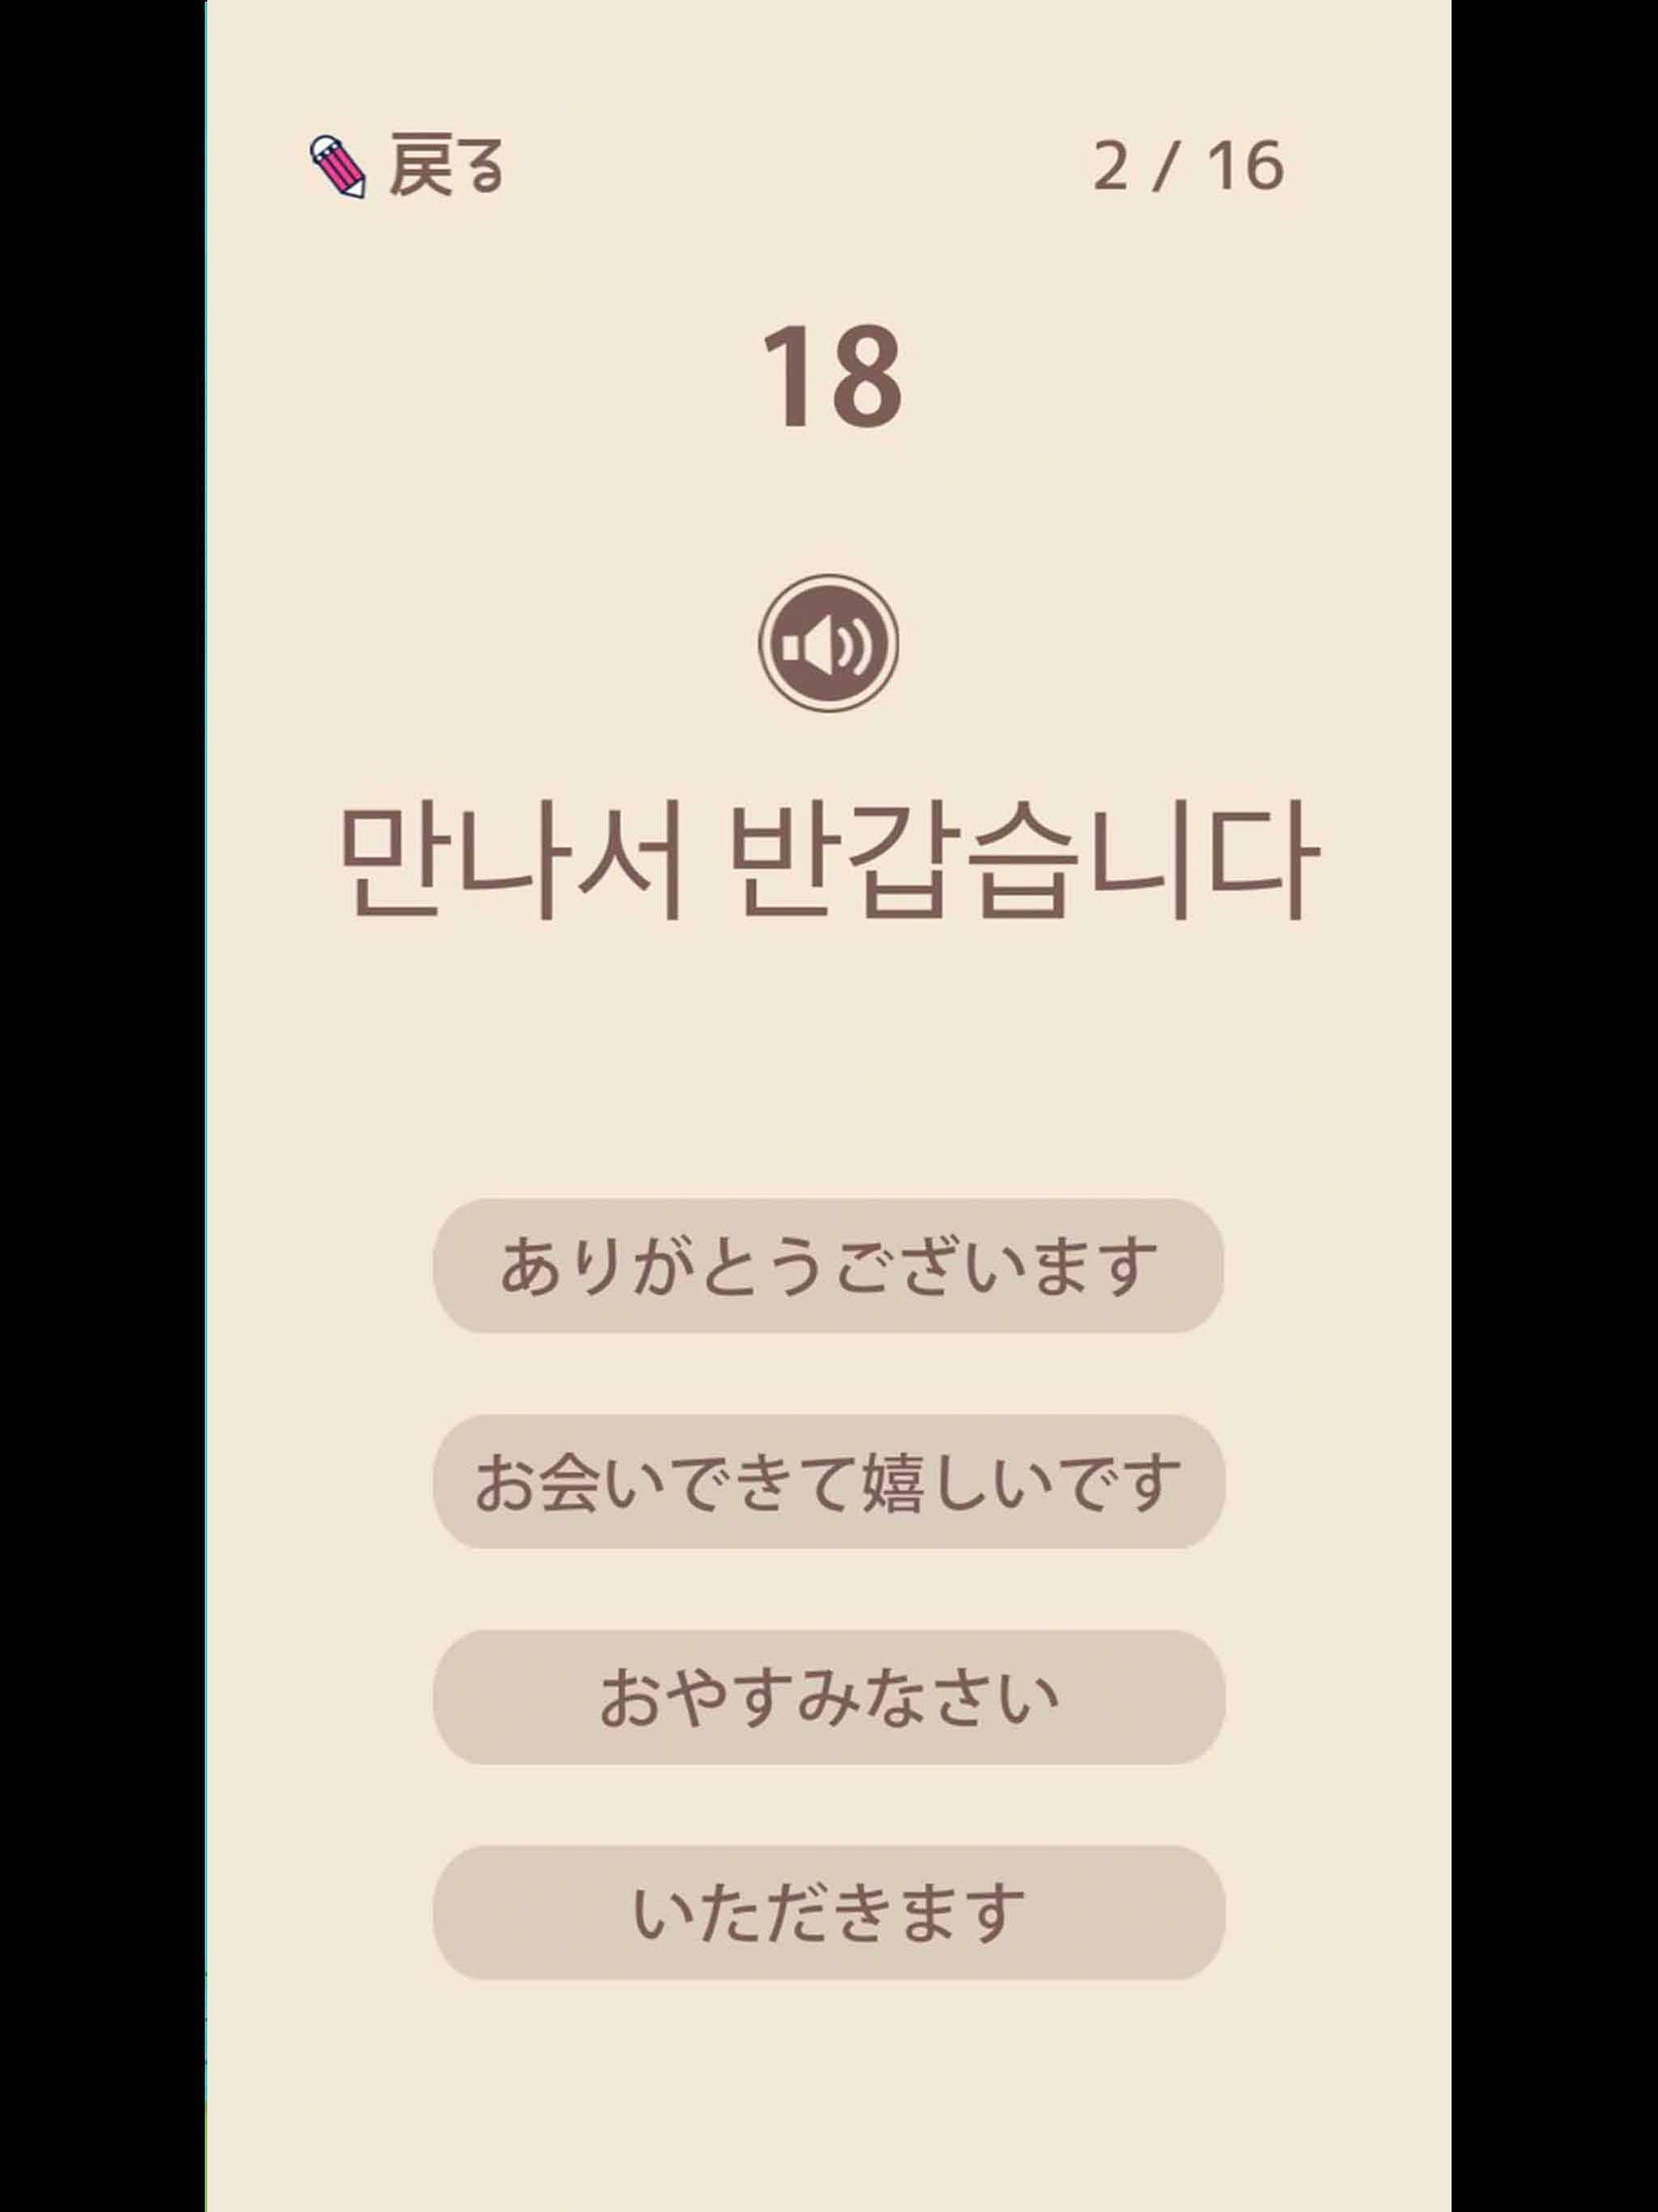 単語で覚える韓国語 ハングル学習アプリ 初心者も安心 無料で覚える人気のかんこくご勉強アプリ For Android Apk Download